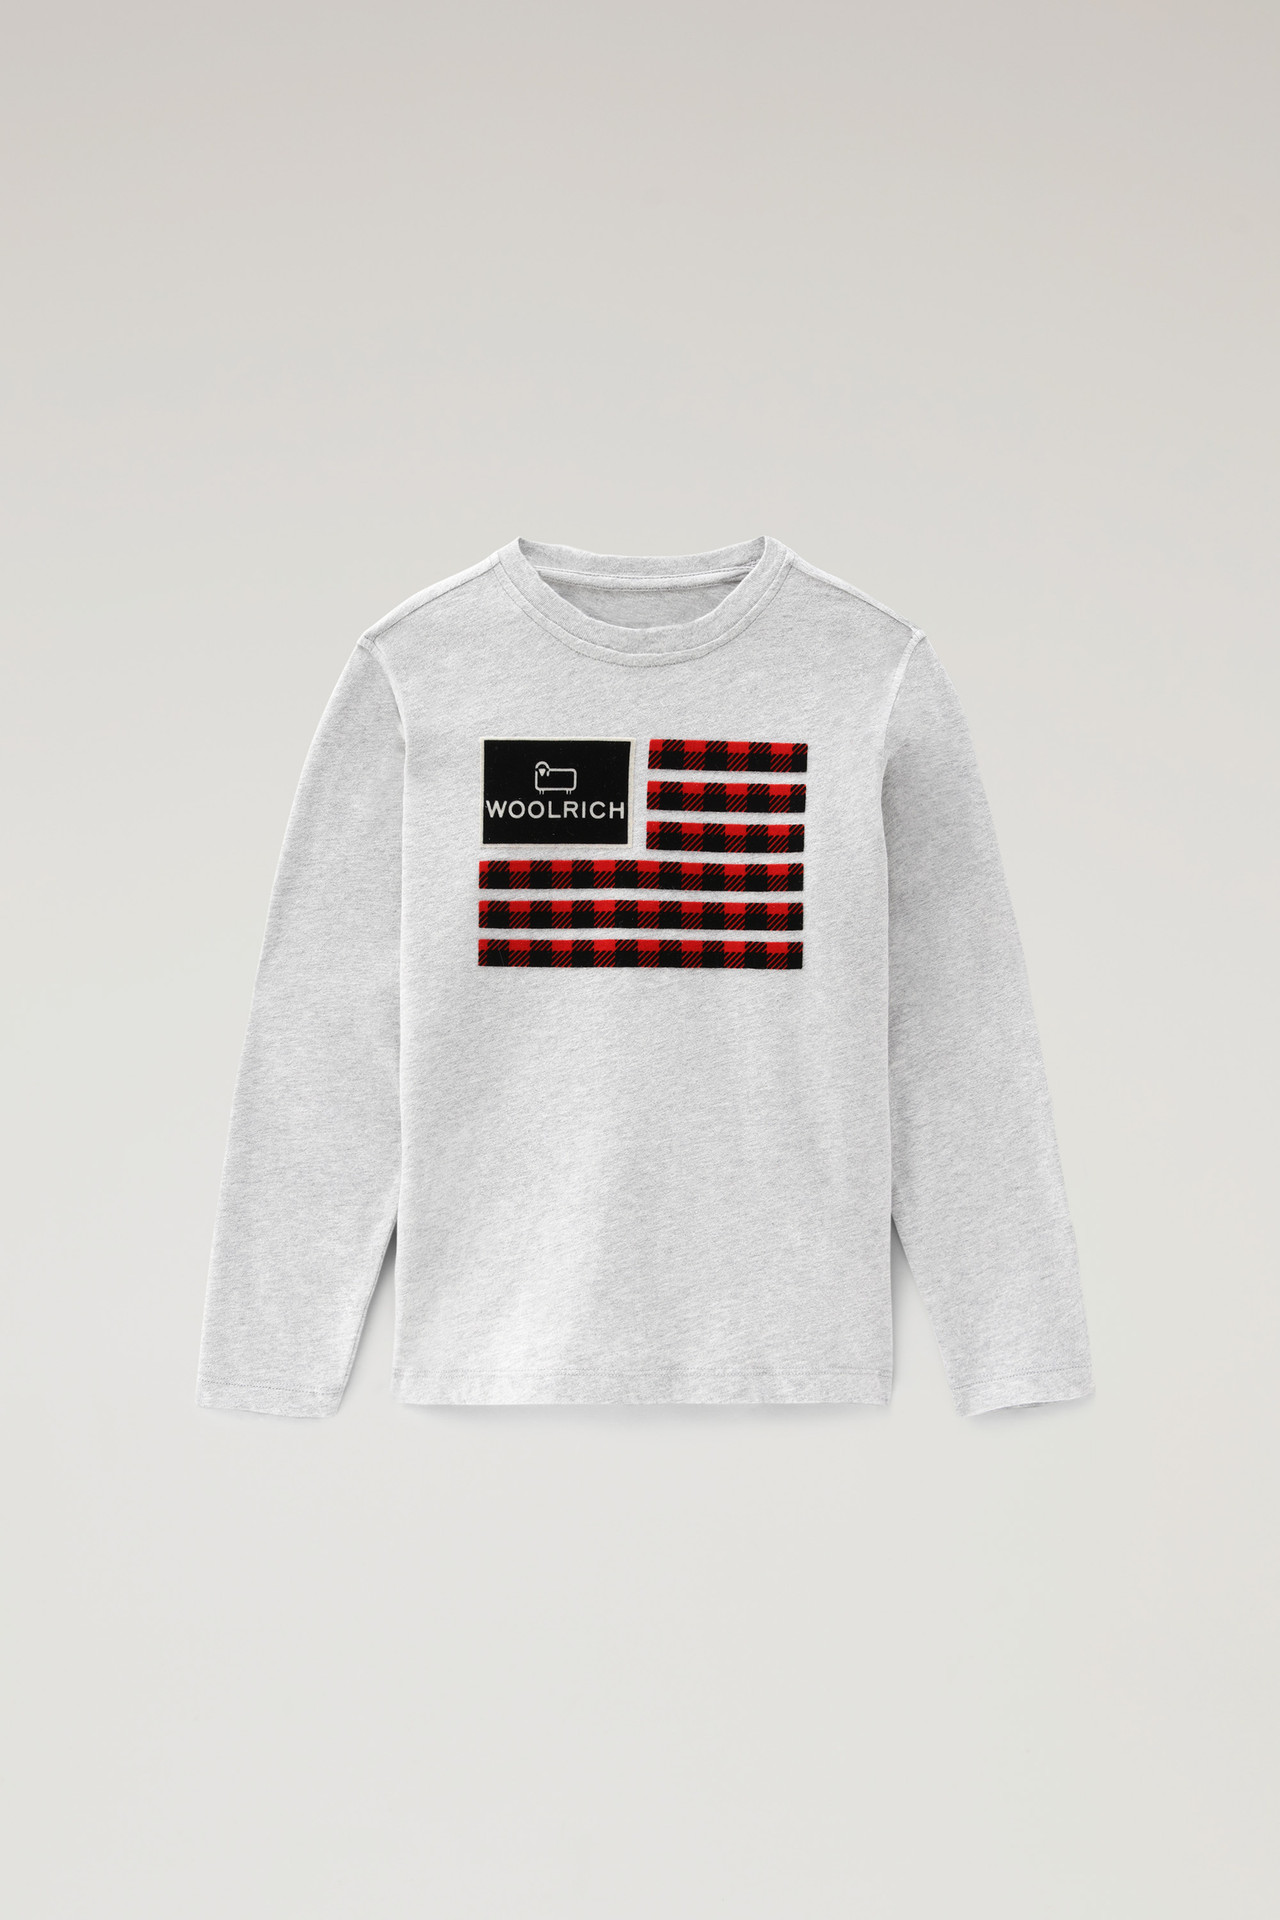 Woolrich – Flag T-shirt – Grijs